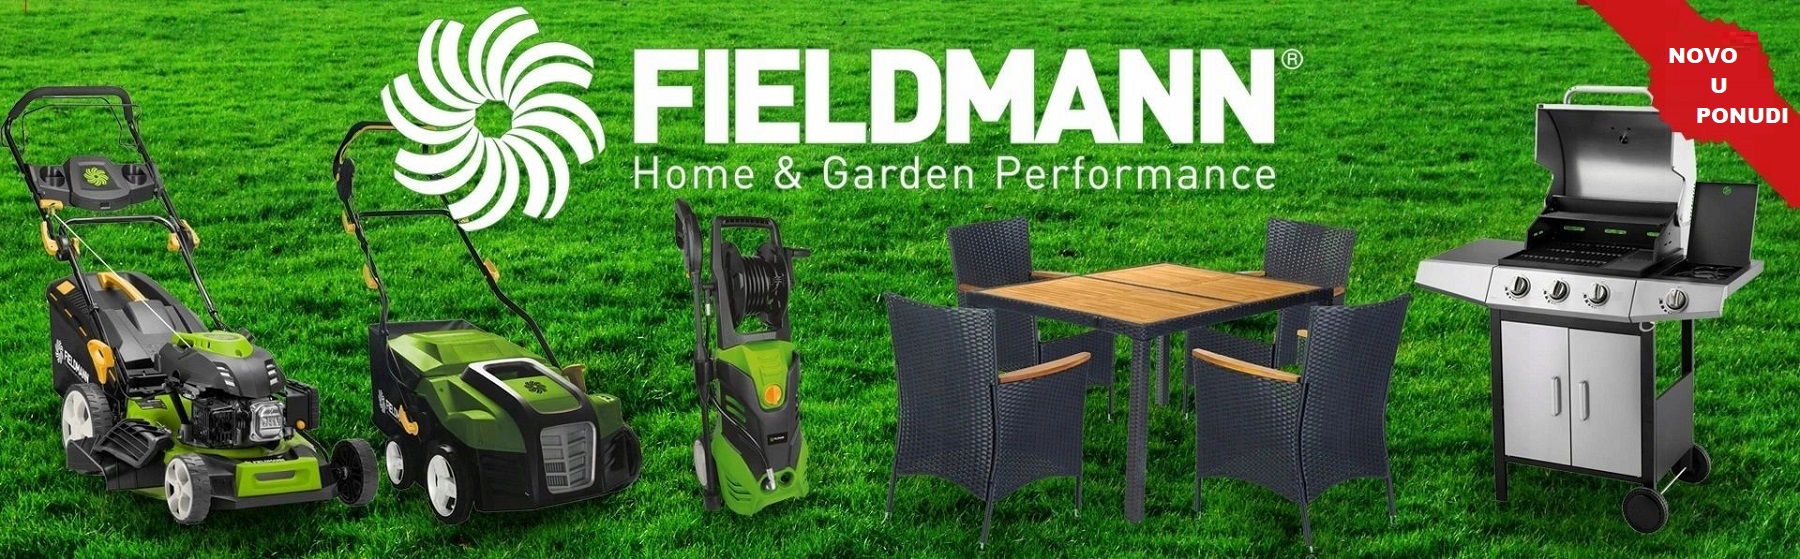 Fieldmann                                                                                                                                                                                                                                                      